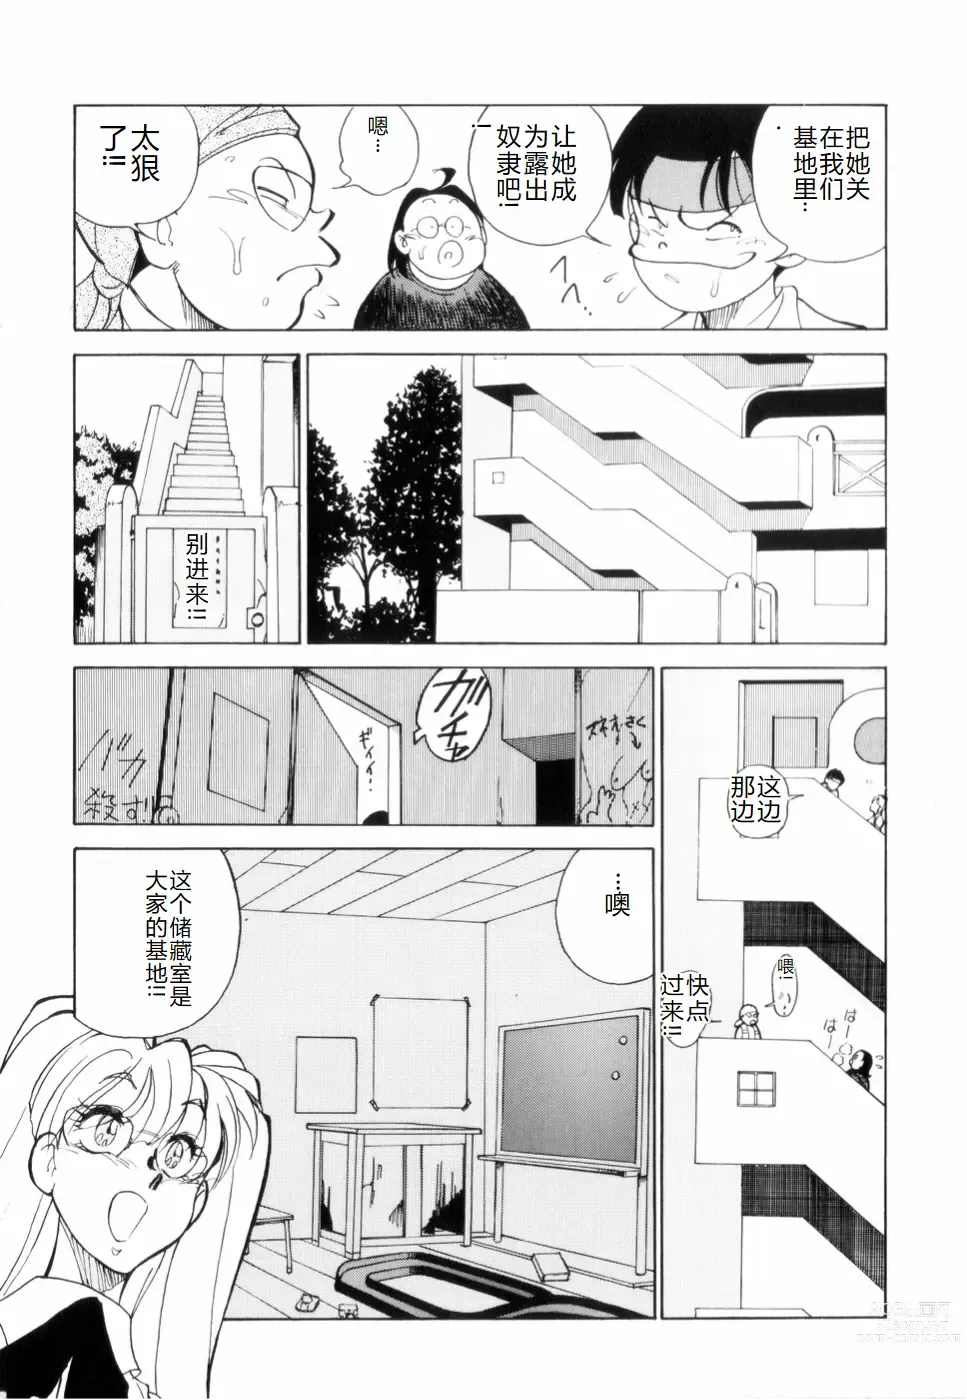 Page 9 of manga Hakujuu no Hasha